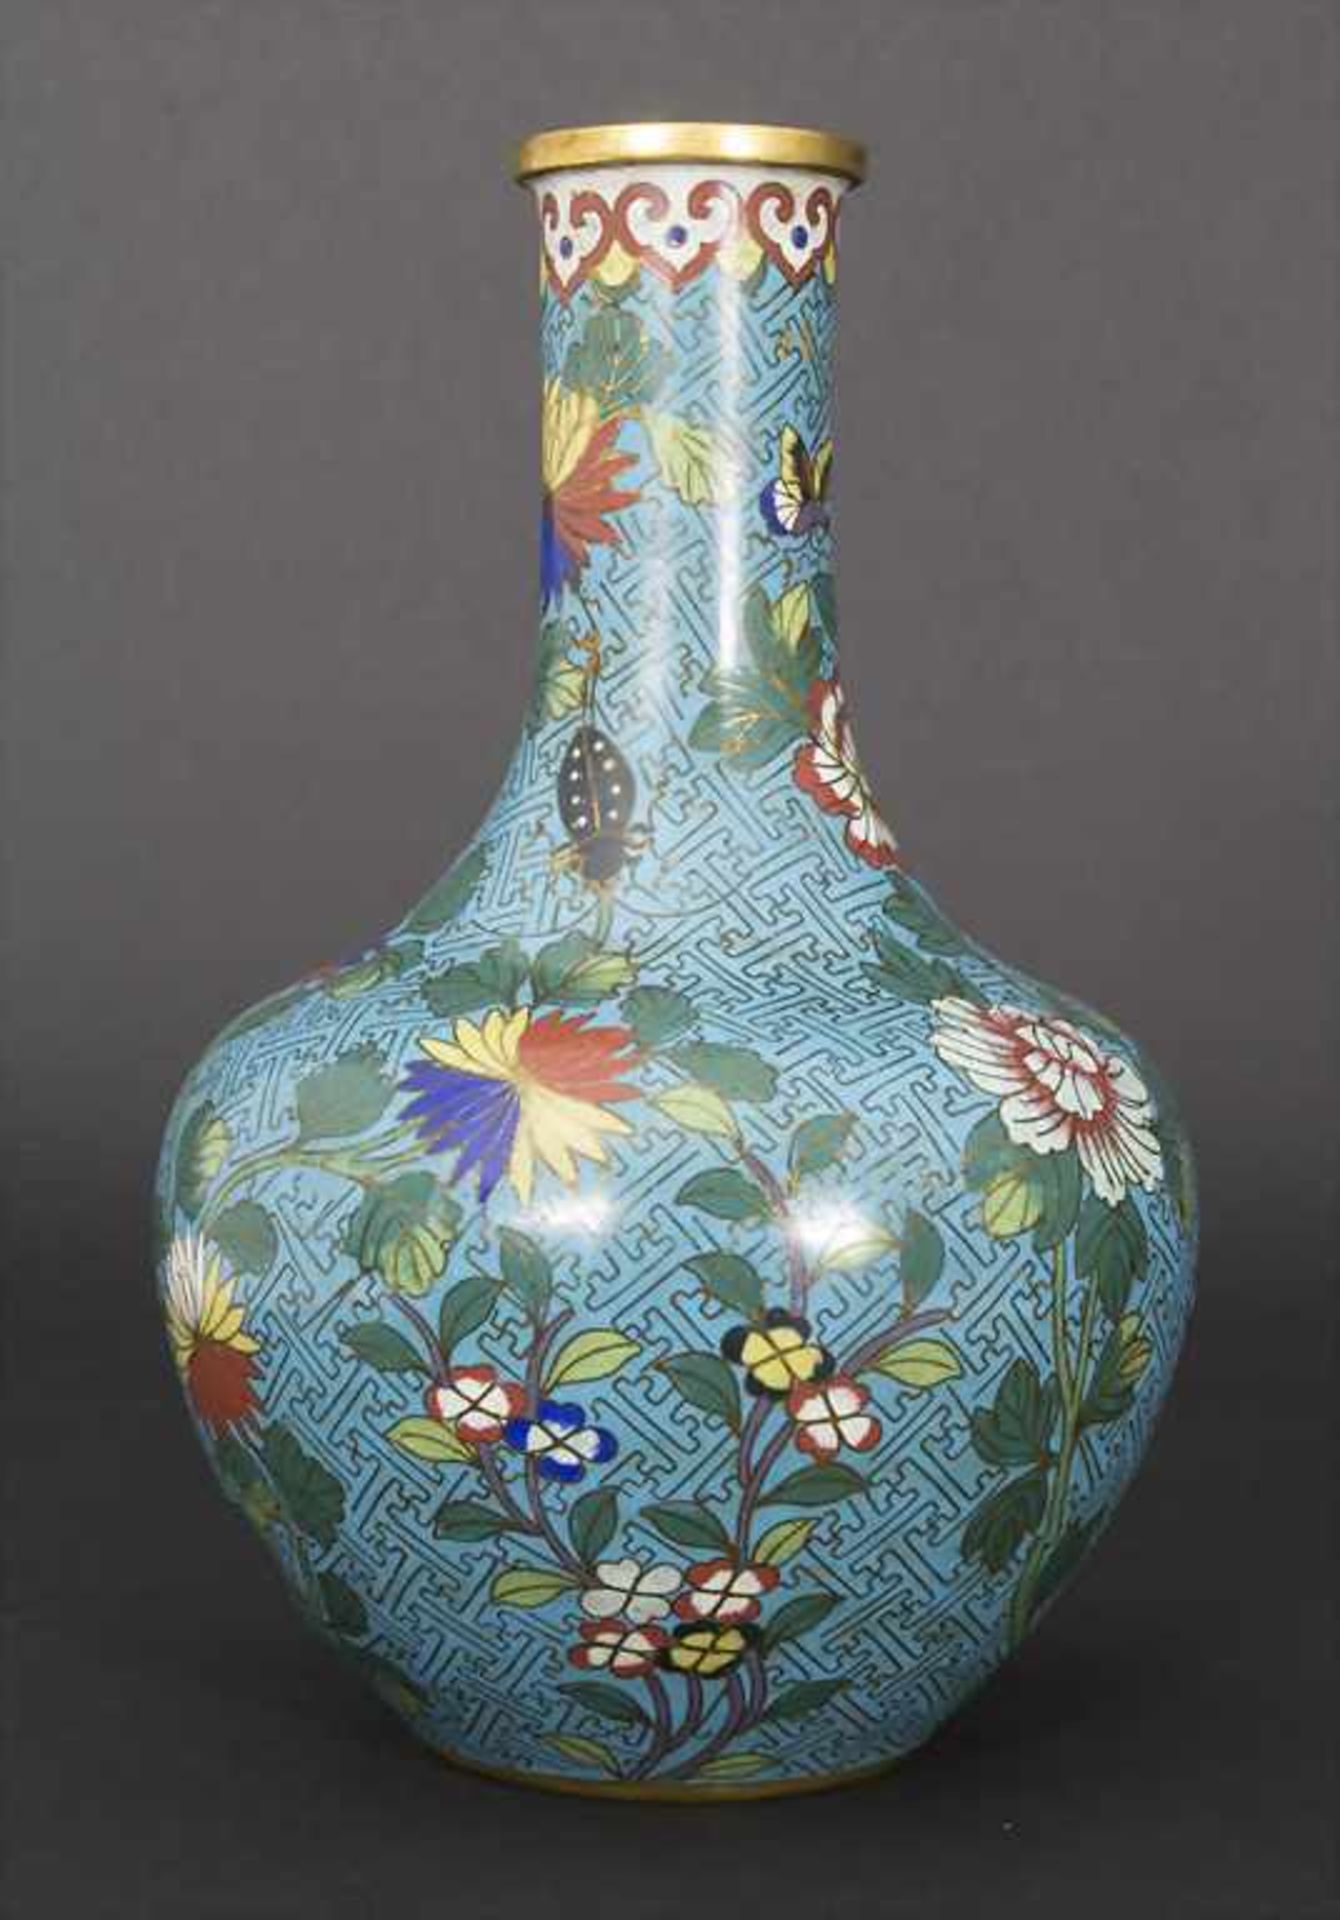 Cloisonné-Ziervase, China, Qing-Dynastie, wohl Qianlong-Periode, 18. Jh. - Bild 4 aus 6